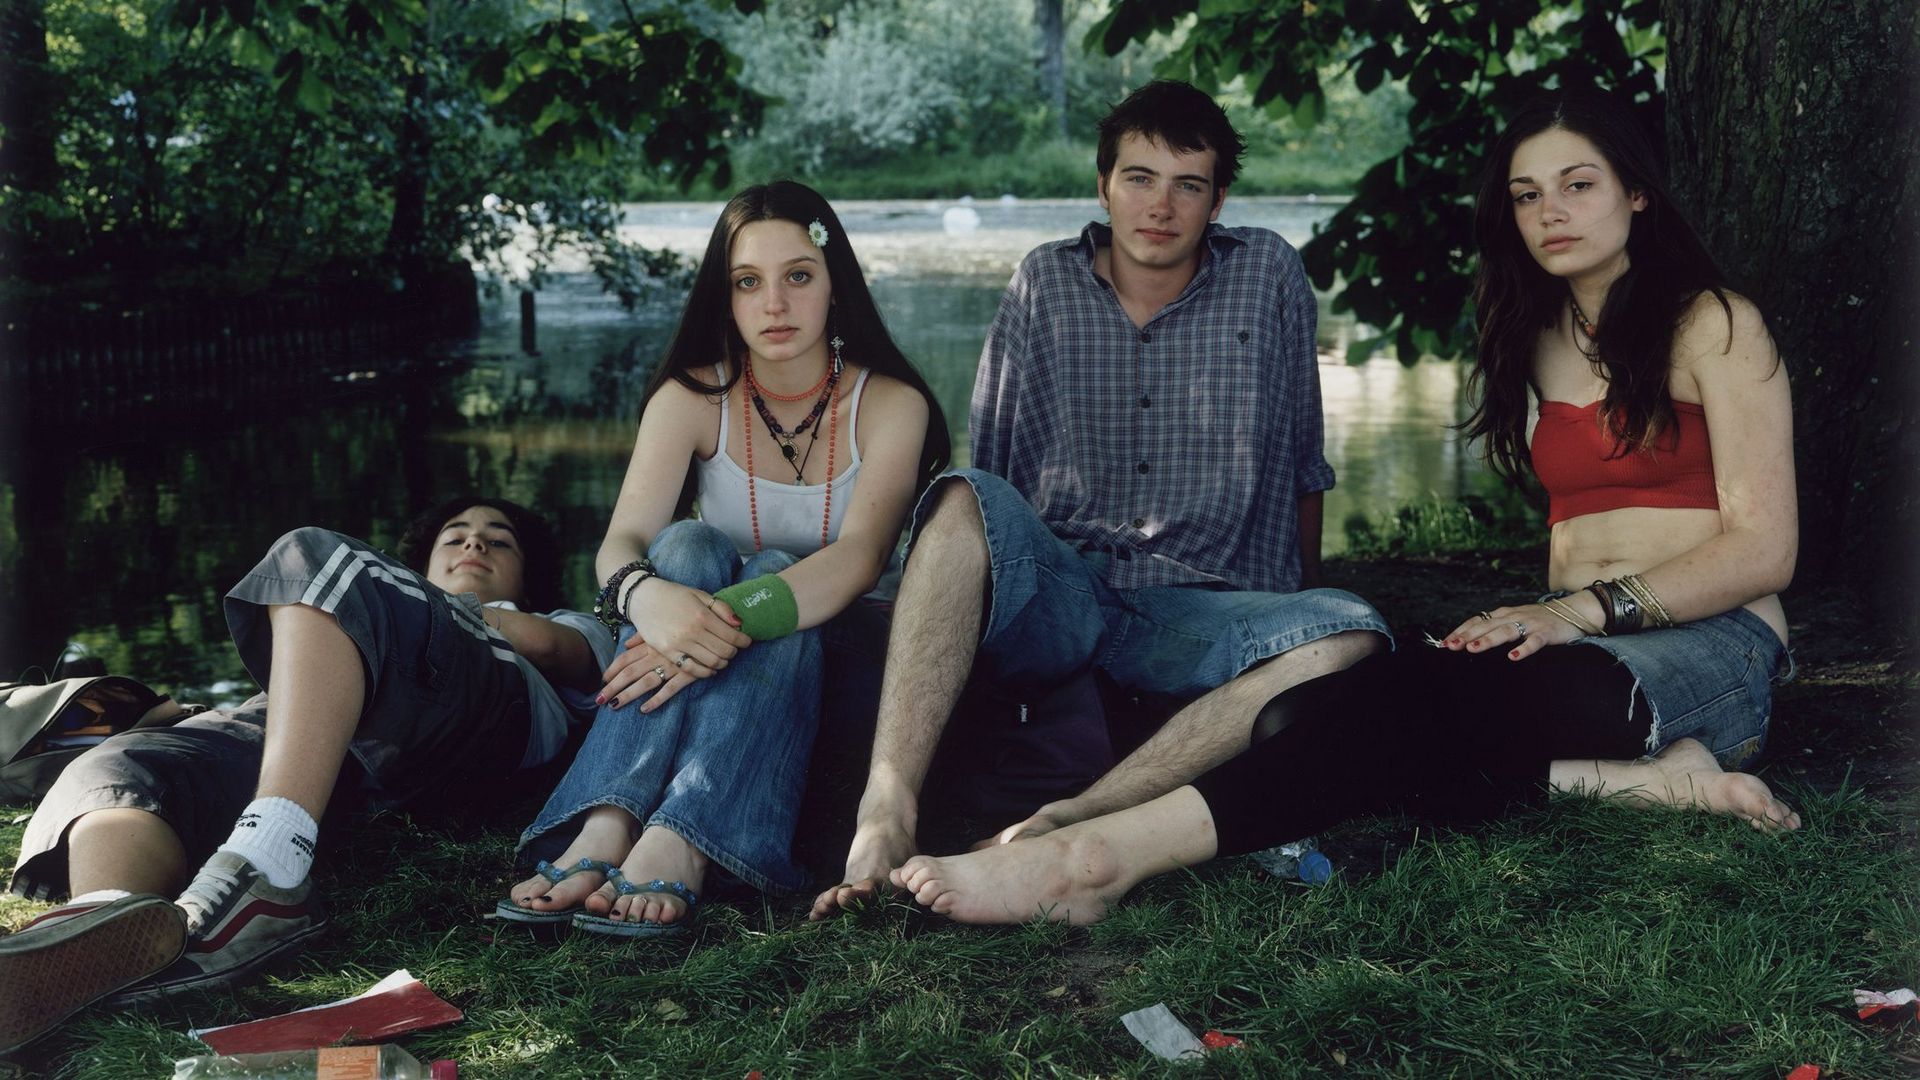 Fotografie: Vier junge Personen sitzen bzw. liegen in Sommerkleidung in einem Park. Ihr direkt ist direkt in die Kamera gerichtet.